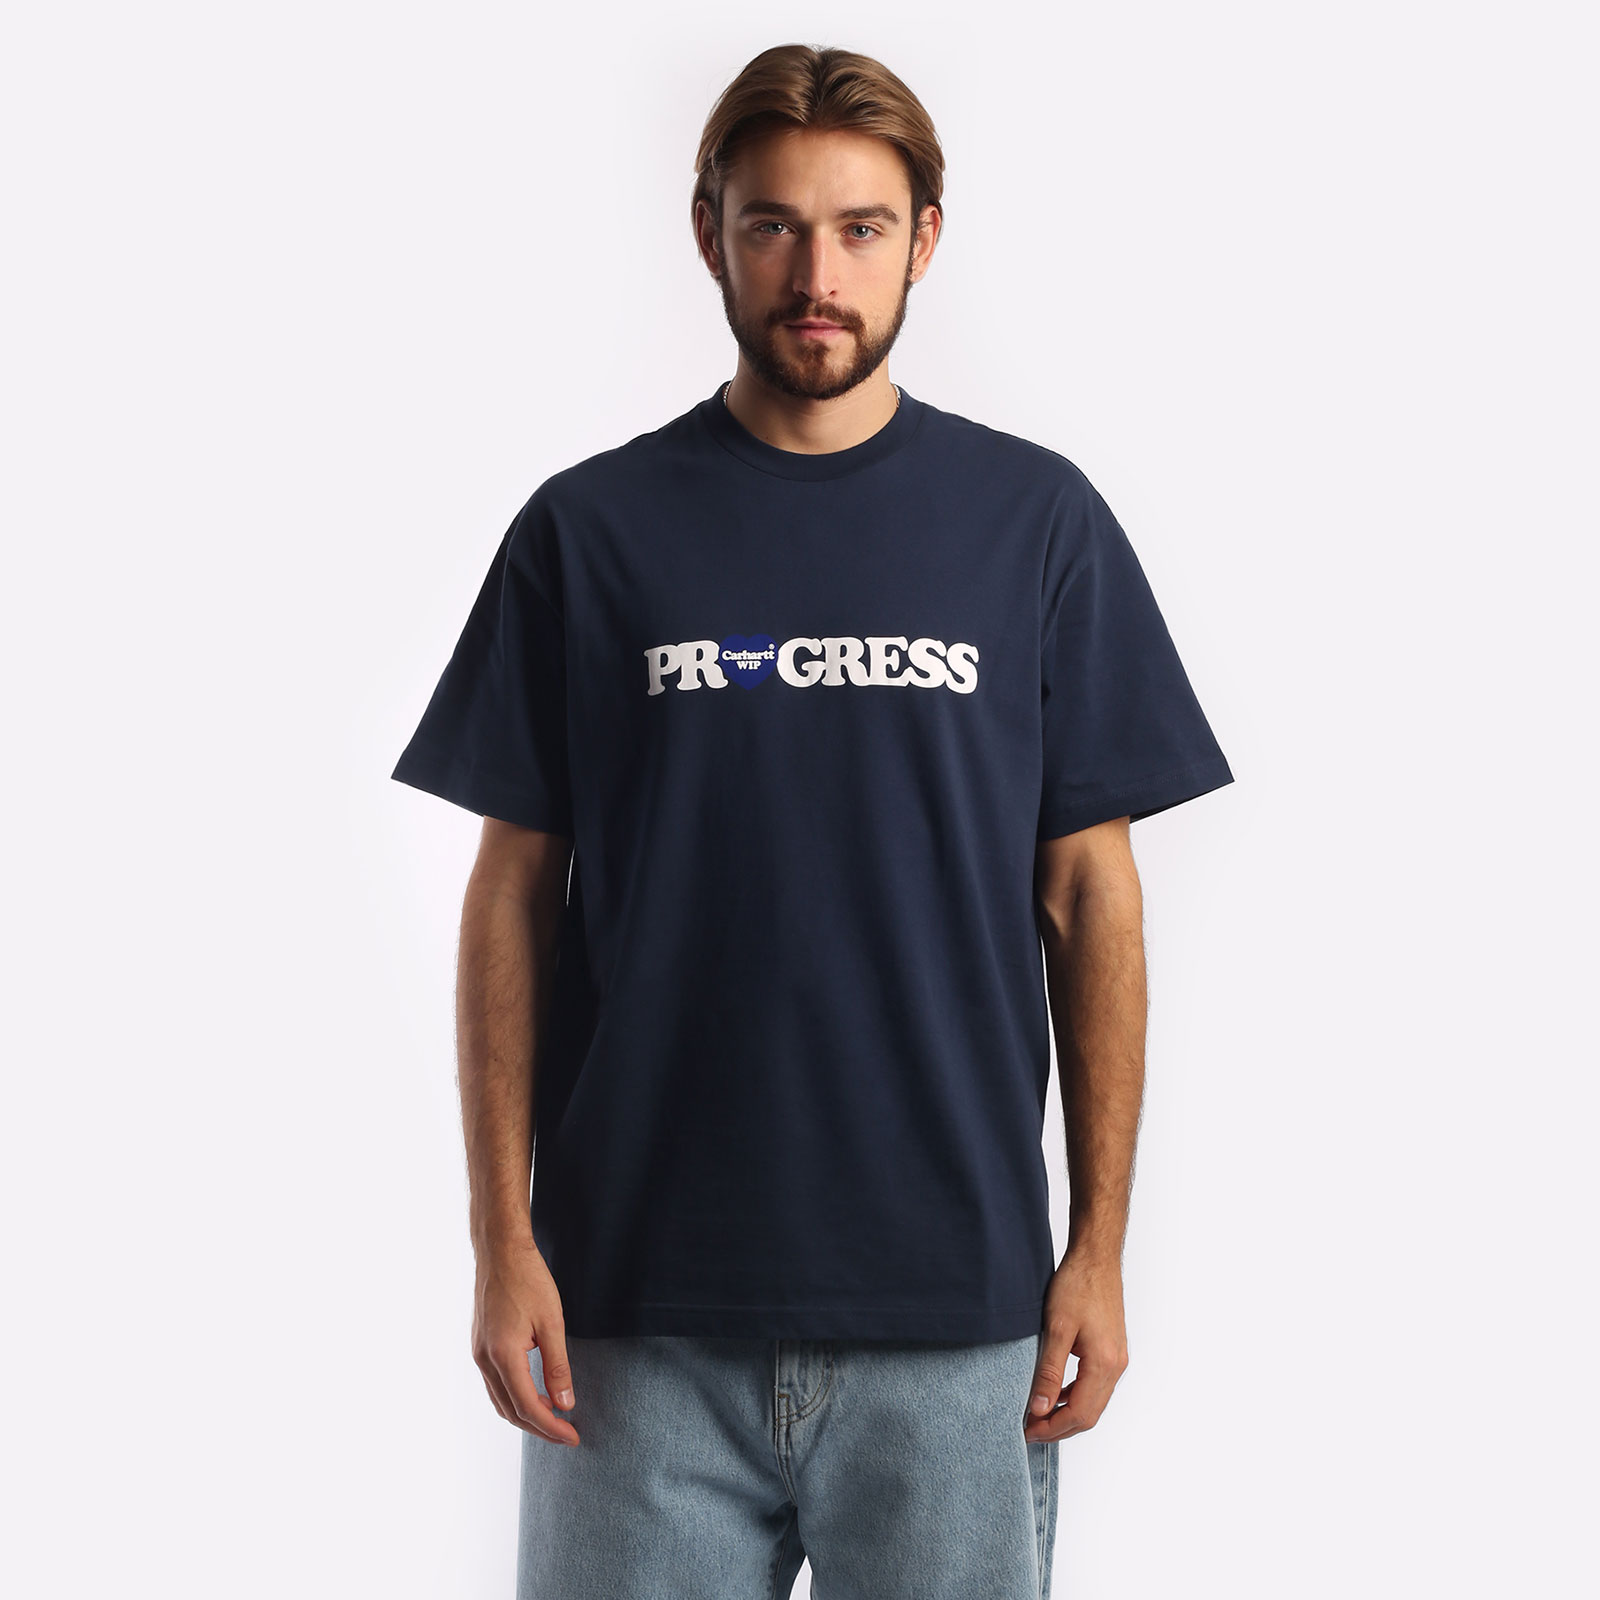 мужская футболка Carhartt WIP S/S I Heart Progress T-Shirt  (I032378-blue)  - цена, описание, фото 1